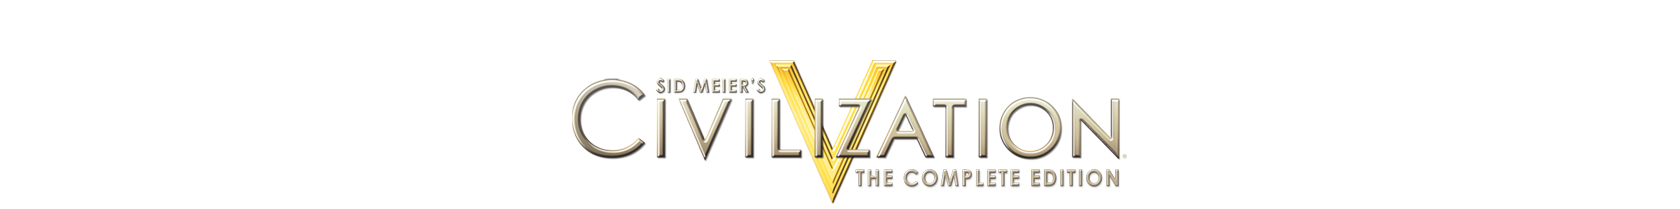 Civilization Complete Edition - Civilization Game, Transparent background PNG HD thumbnail